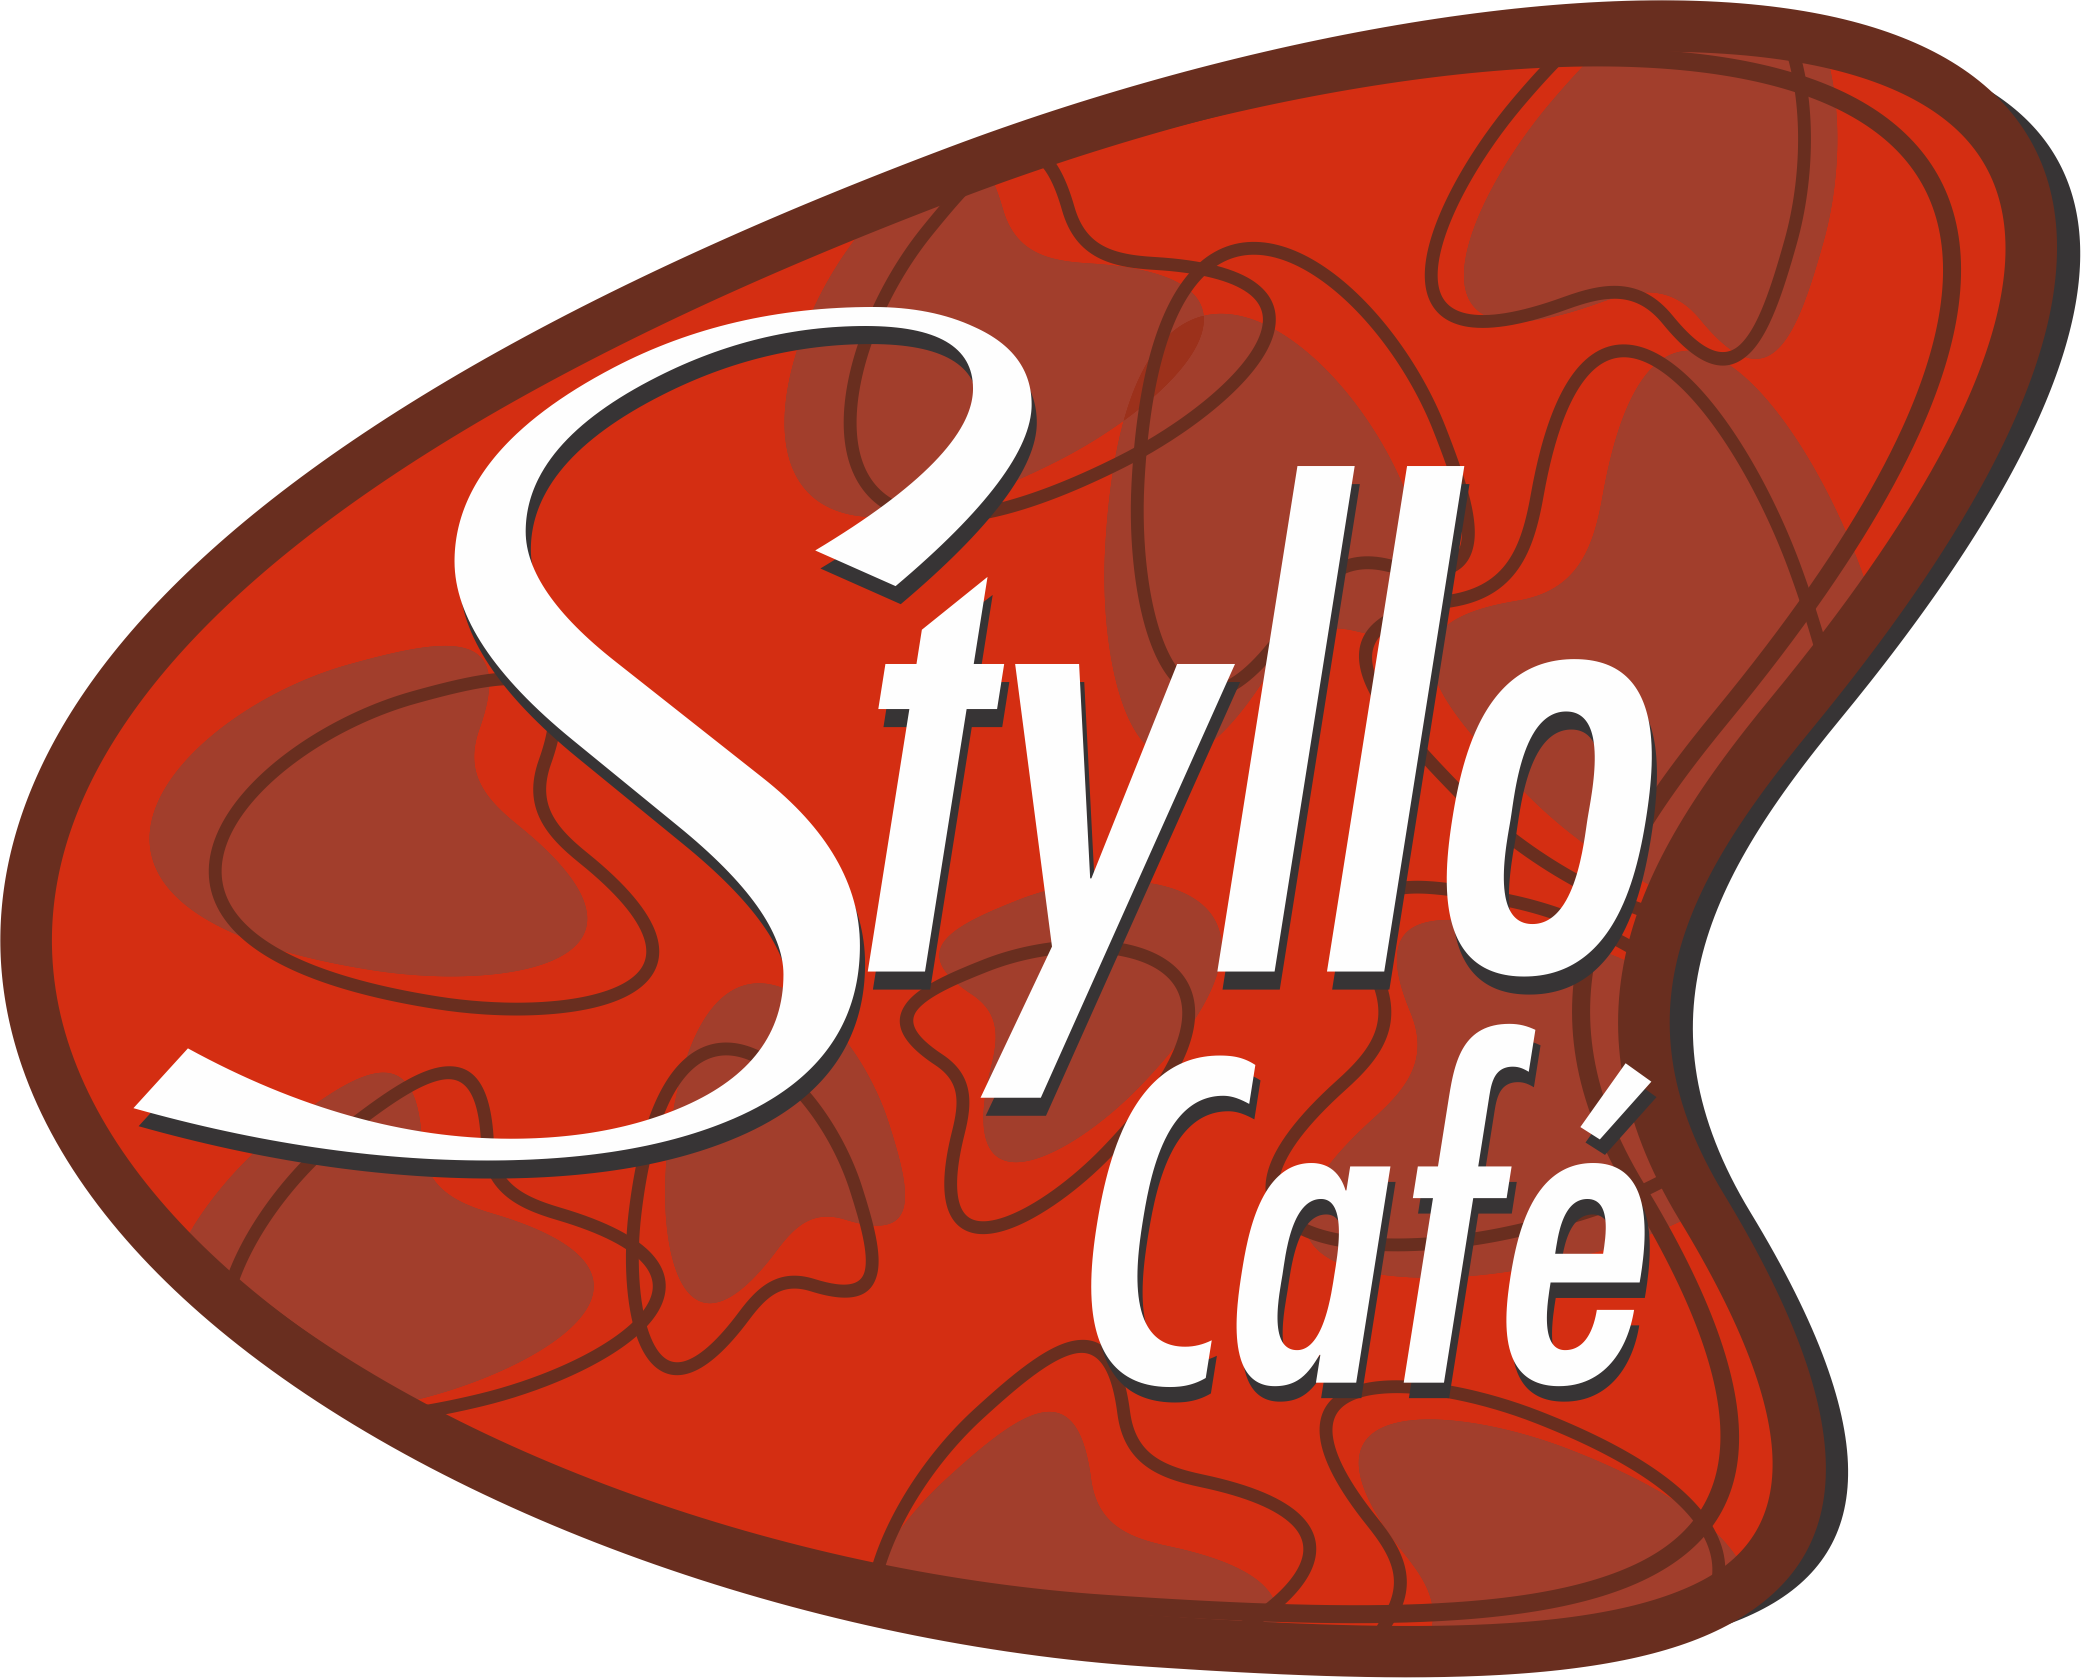 STYLLO CAFE